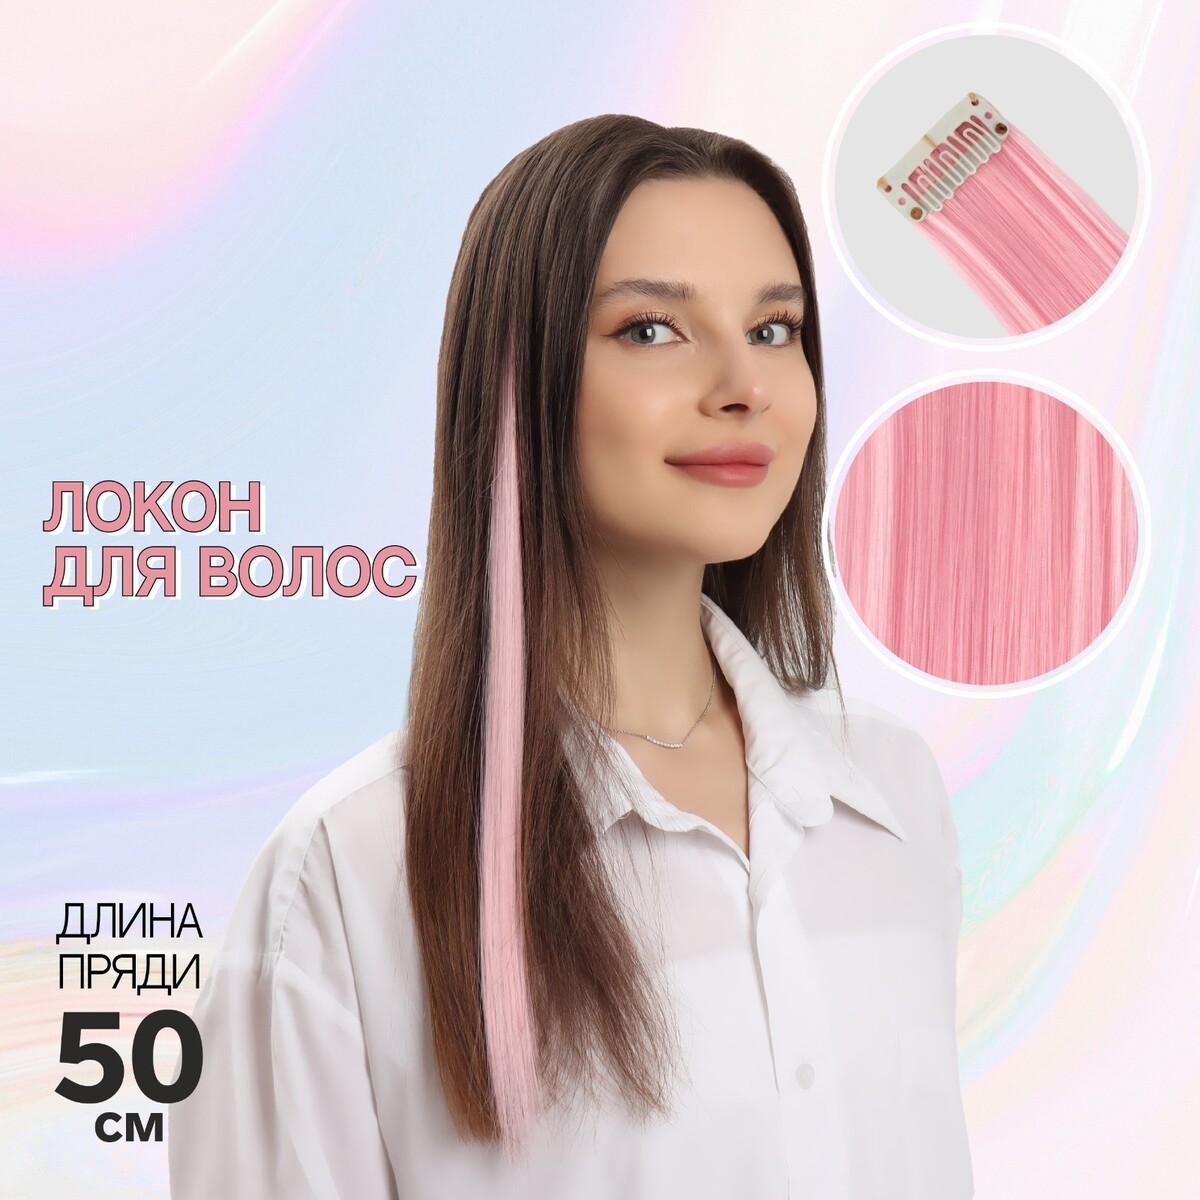 Локон накладной, прямой волос, на заколке, 50 см, 5 гр, цвет розовый эпилятор ластик женский для удаления волос розовый